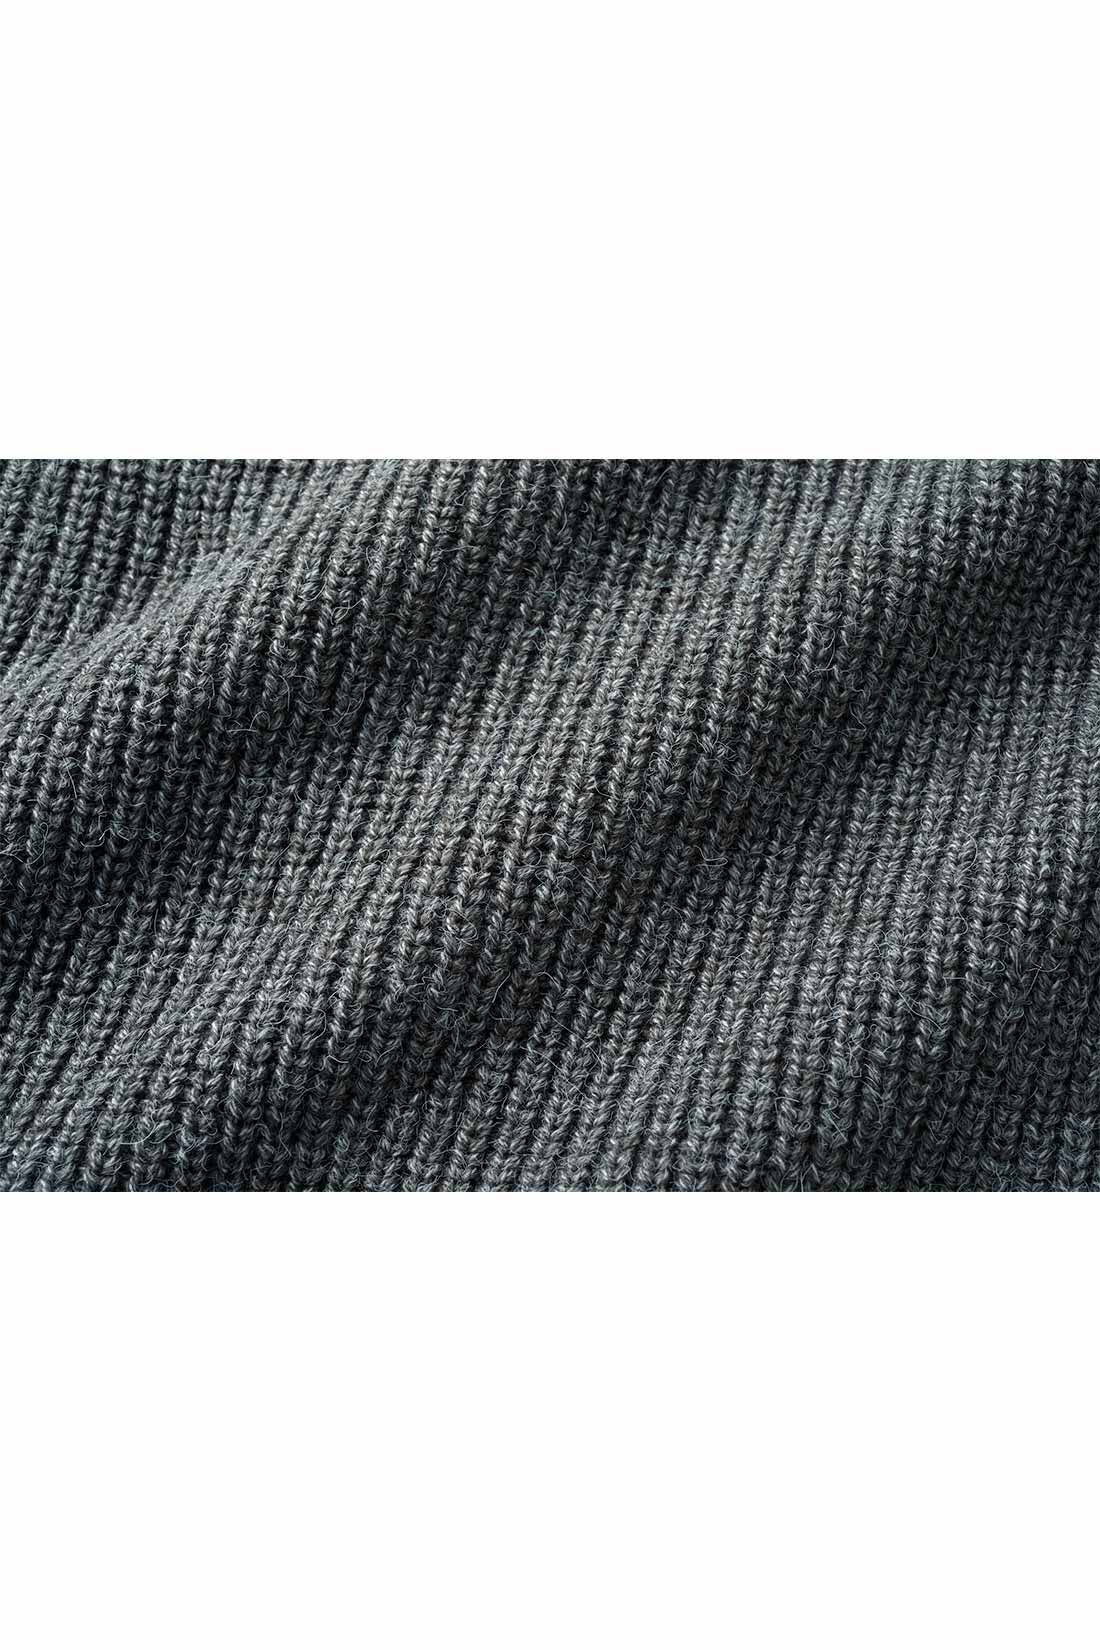 IEDIT[イディット]　すそクロスデザインが新鮮なニットトップス〈ダークグレー〉|ほどよく厚地で表面感のある片あぜ編みがリッチな表情。